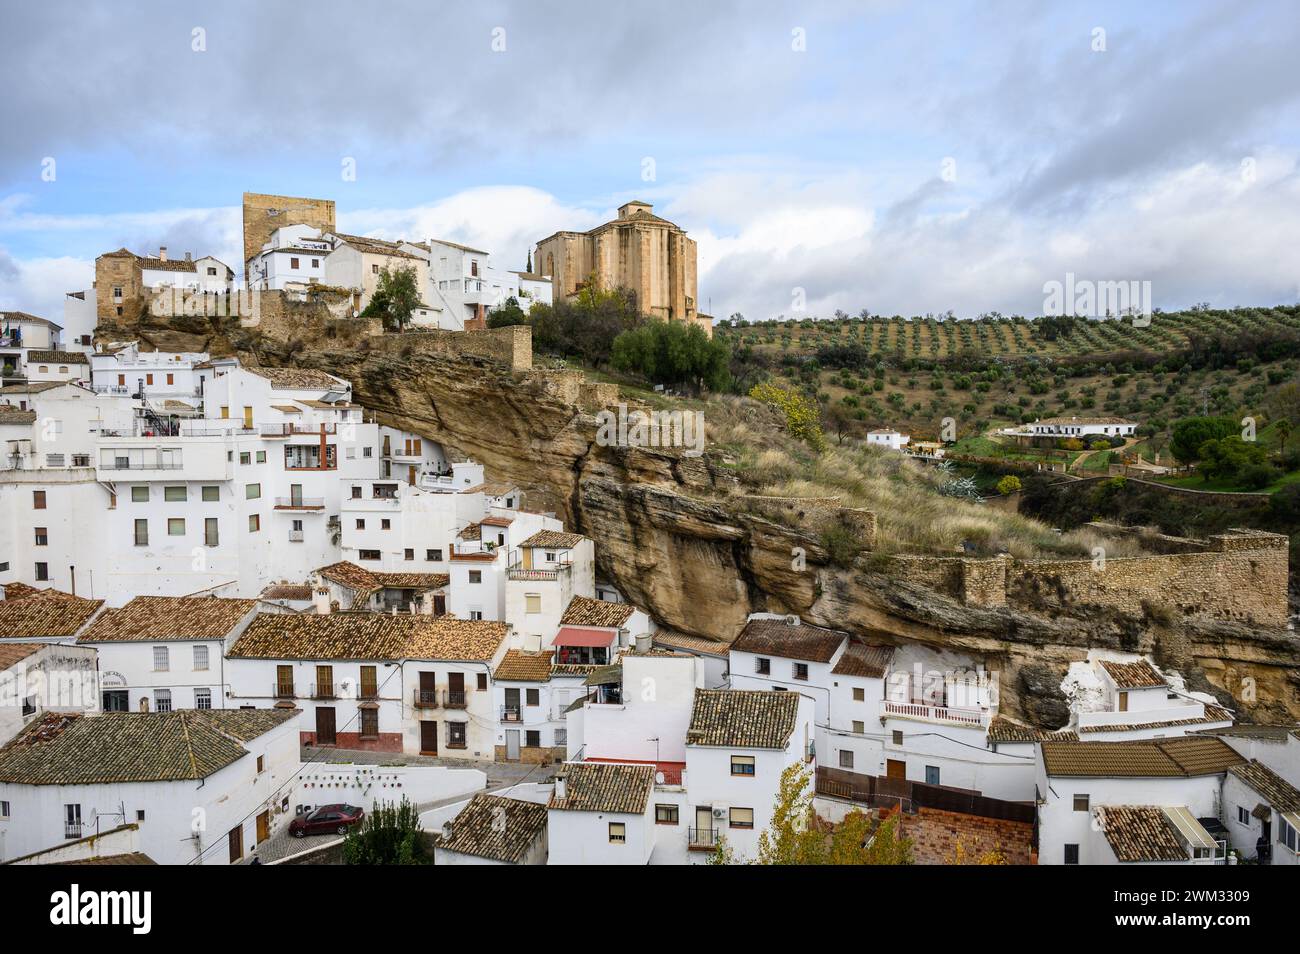 Vue panoramique sur le village Setenil de las Bodegas et son château depuis le point de vue d'El Carmen, Cadix, Espagne. Banque D'Images